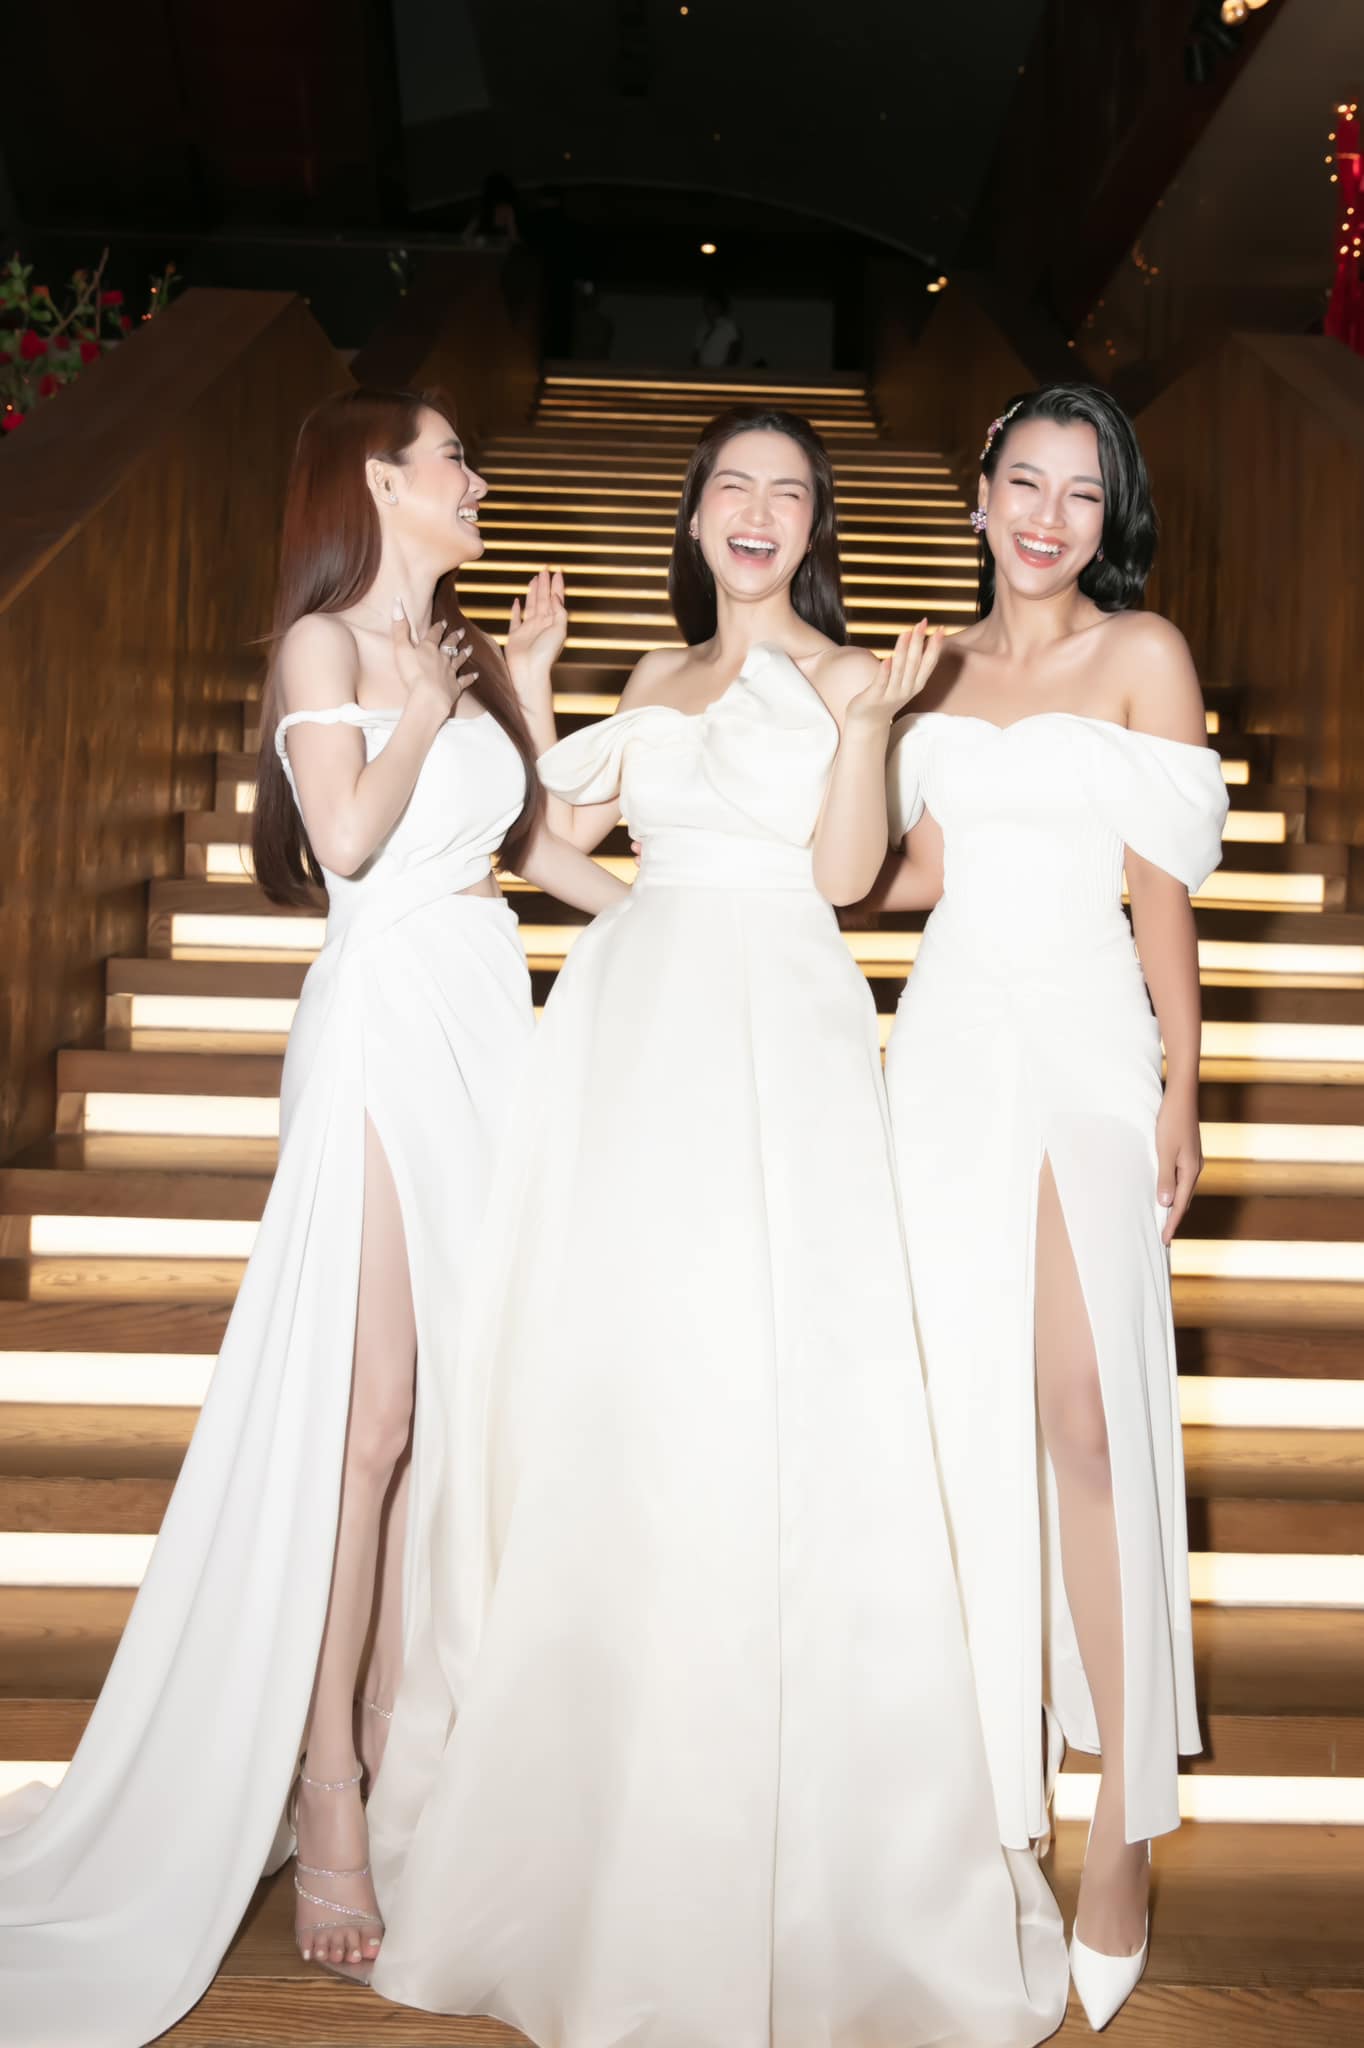 Cả 3 người đẹp đều diện những chiếc váy trắng tao nhã và gợi cảm với thiết kế xẻ tà tinh tế.